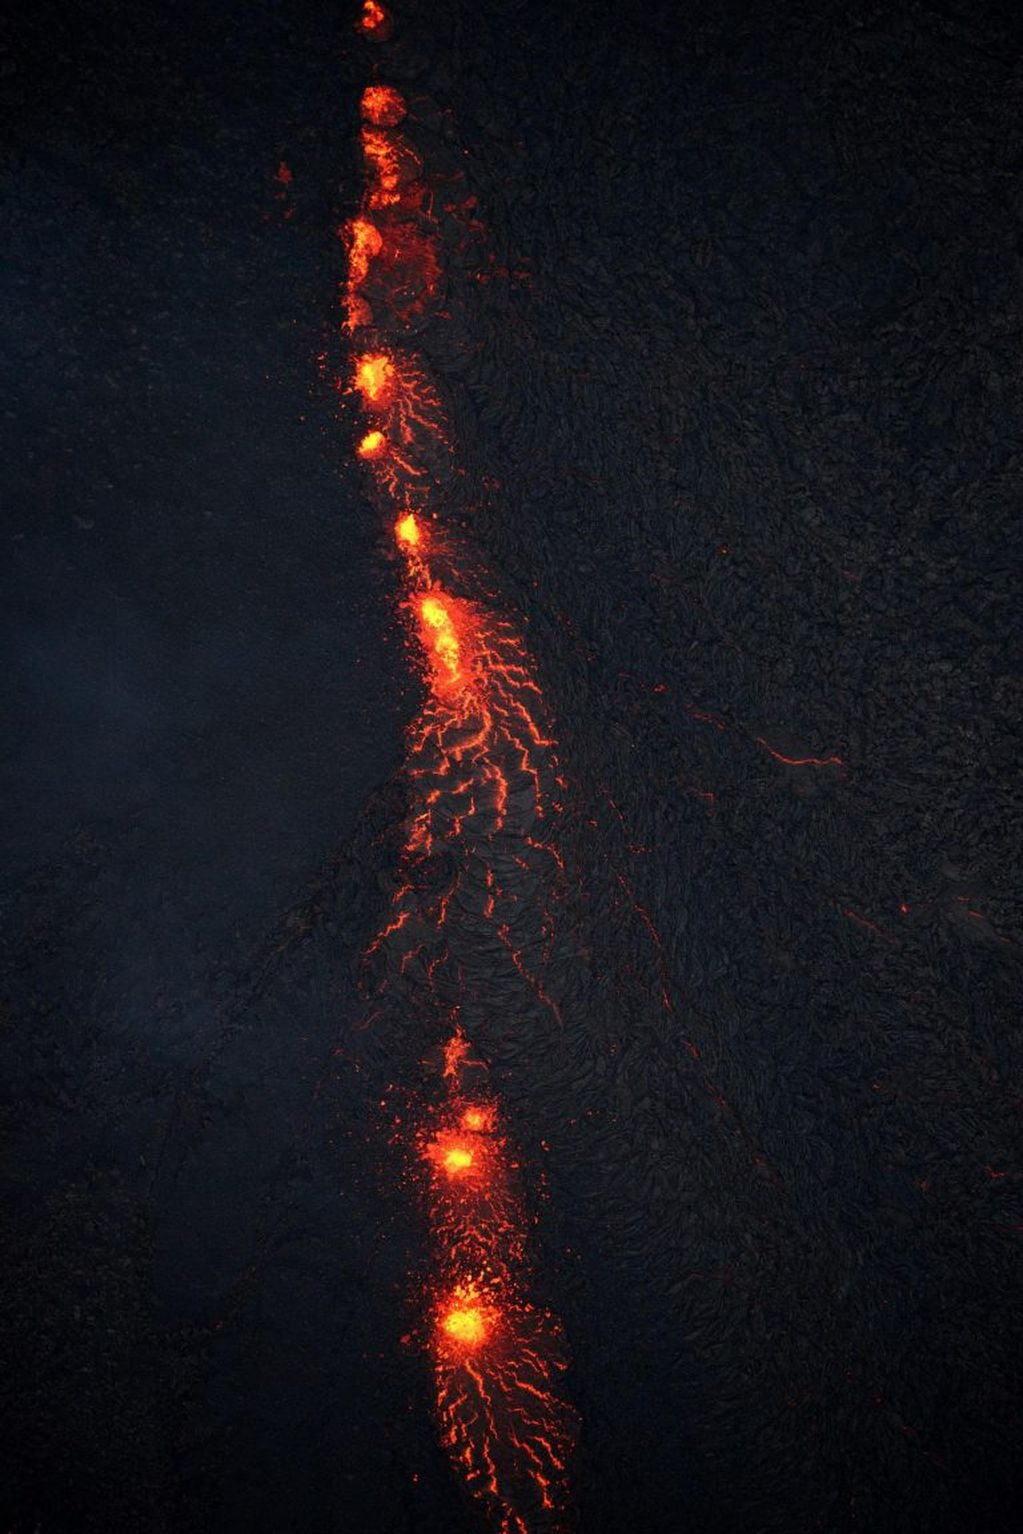 En fotos: la erupción del volcán hawaiano Kilauea complicó la situación en la zona